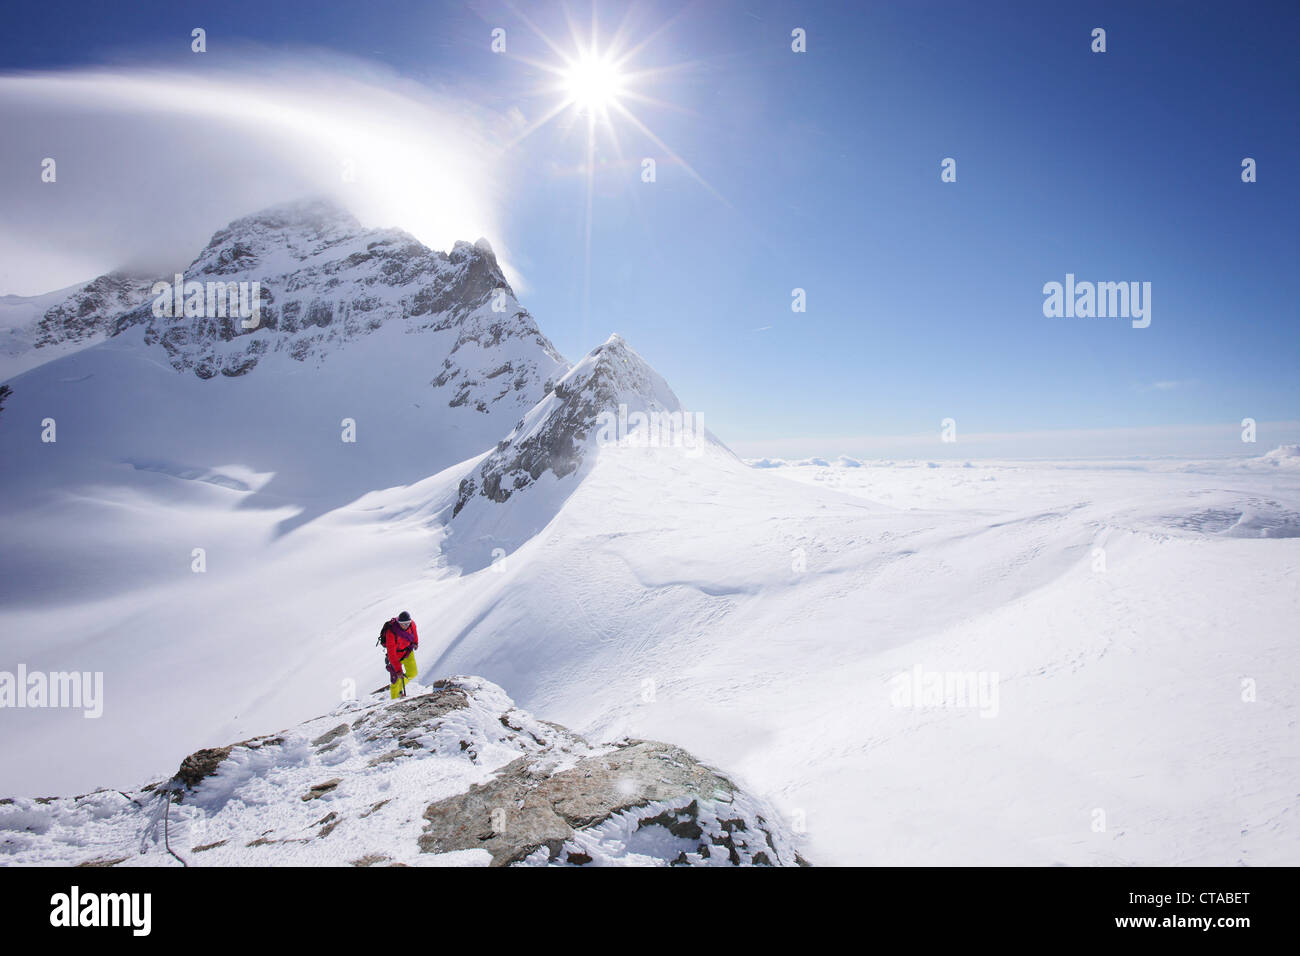 Alpinista al vertice del Jungfraujoch, Jungfrau in background, Grindelwald, Oberland bernese, Svizzera Foto Stock